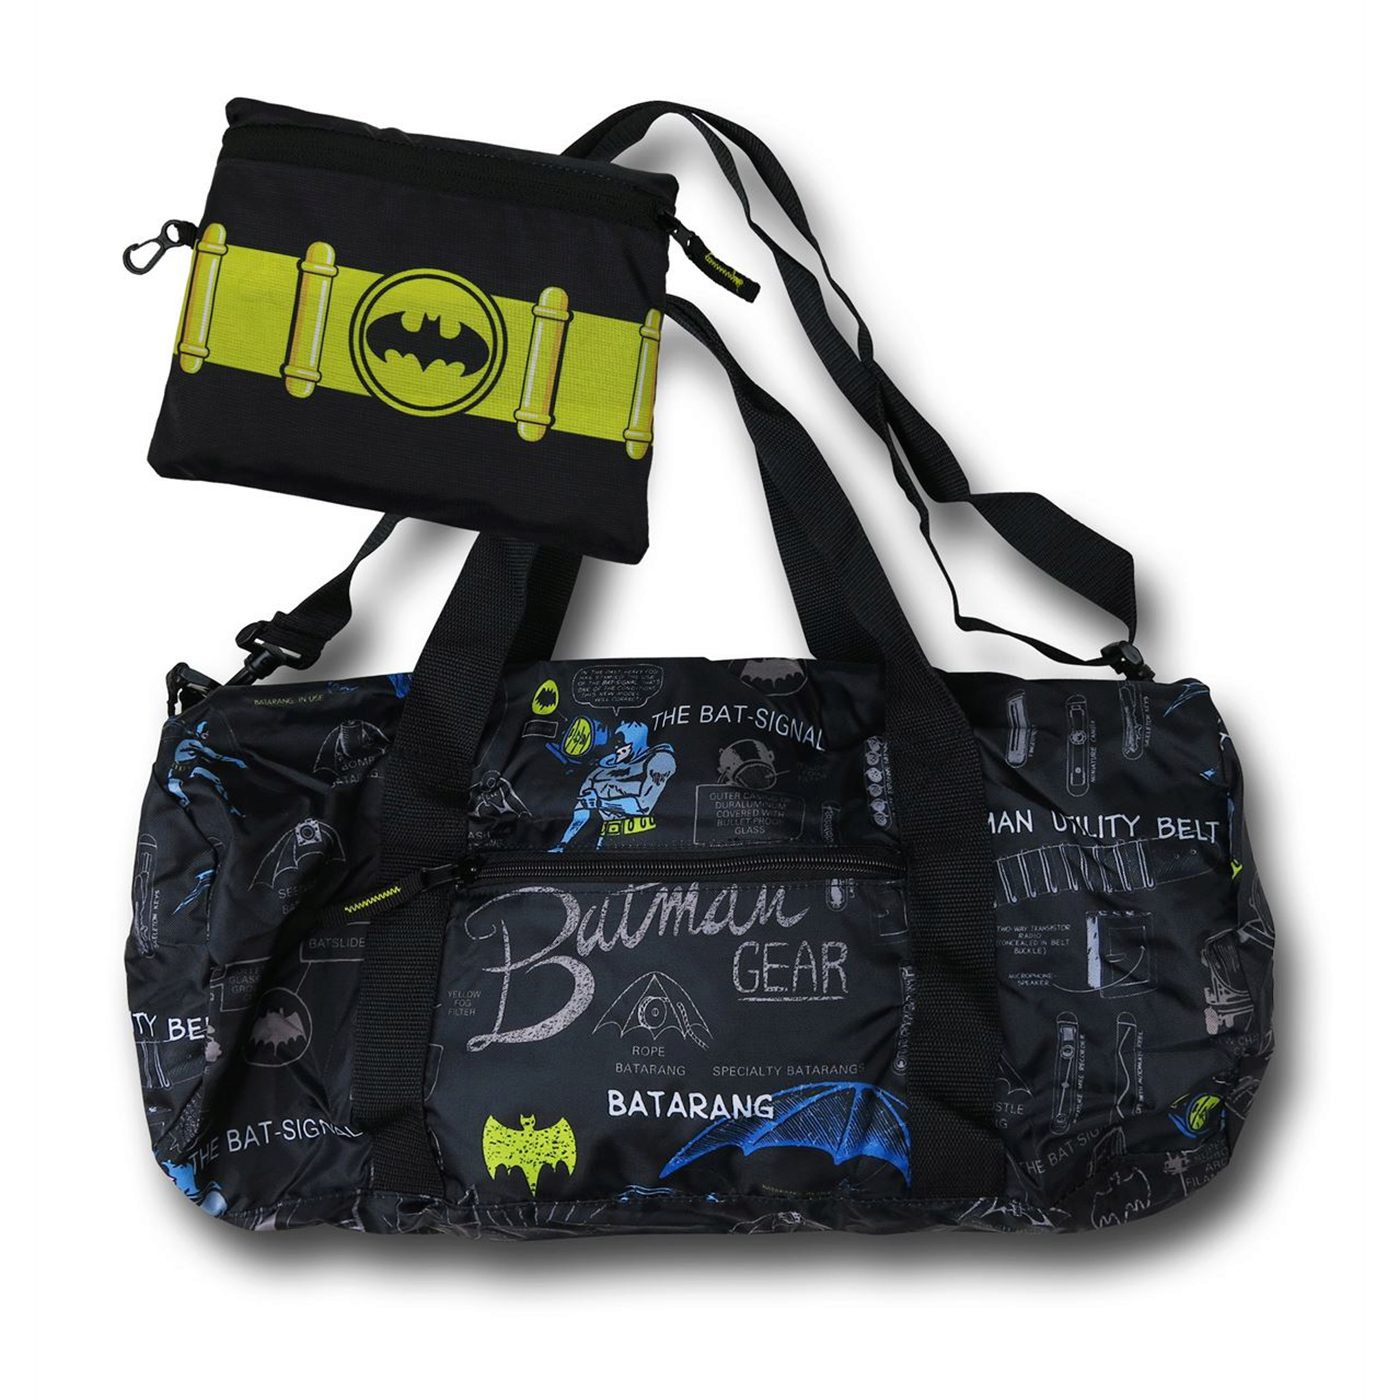 complicated Sticky Sada Batman Duffle Bag